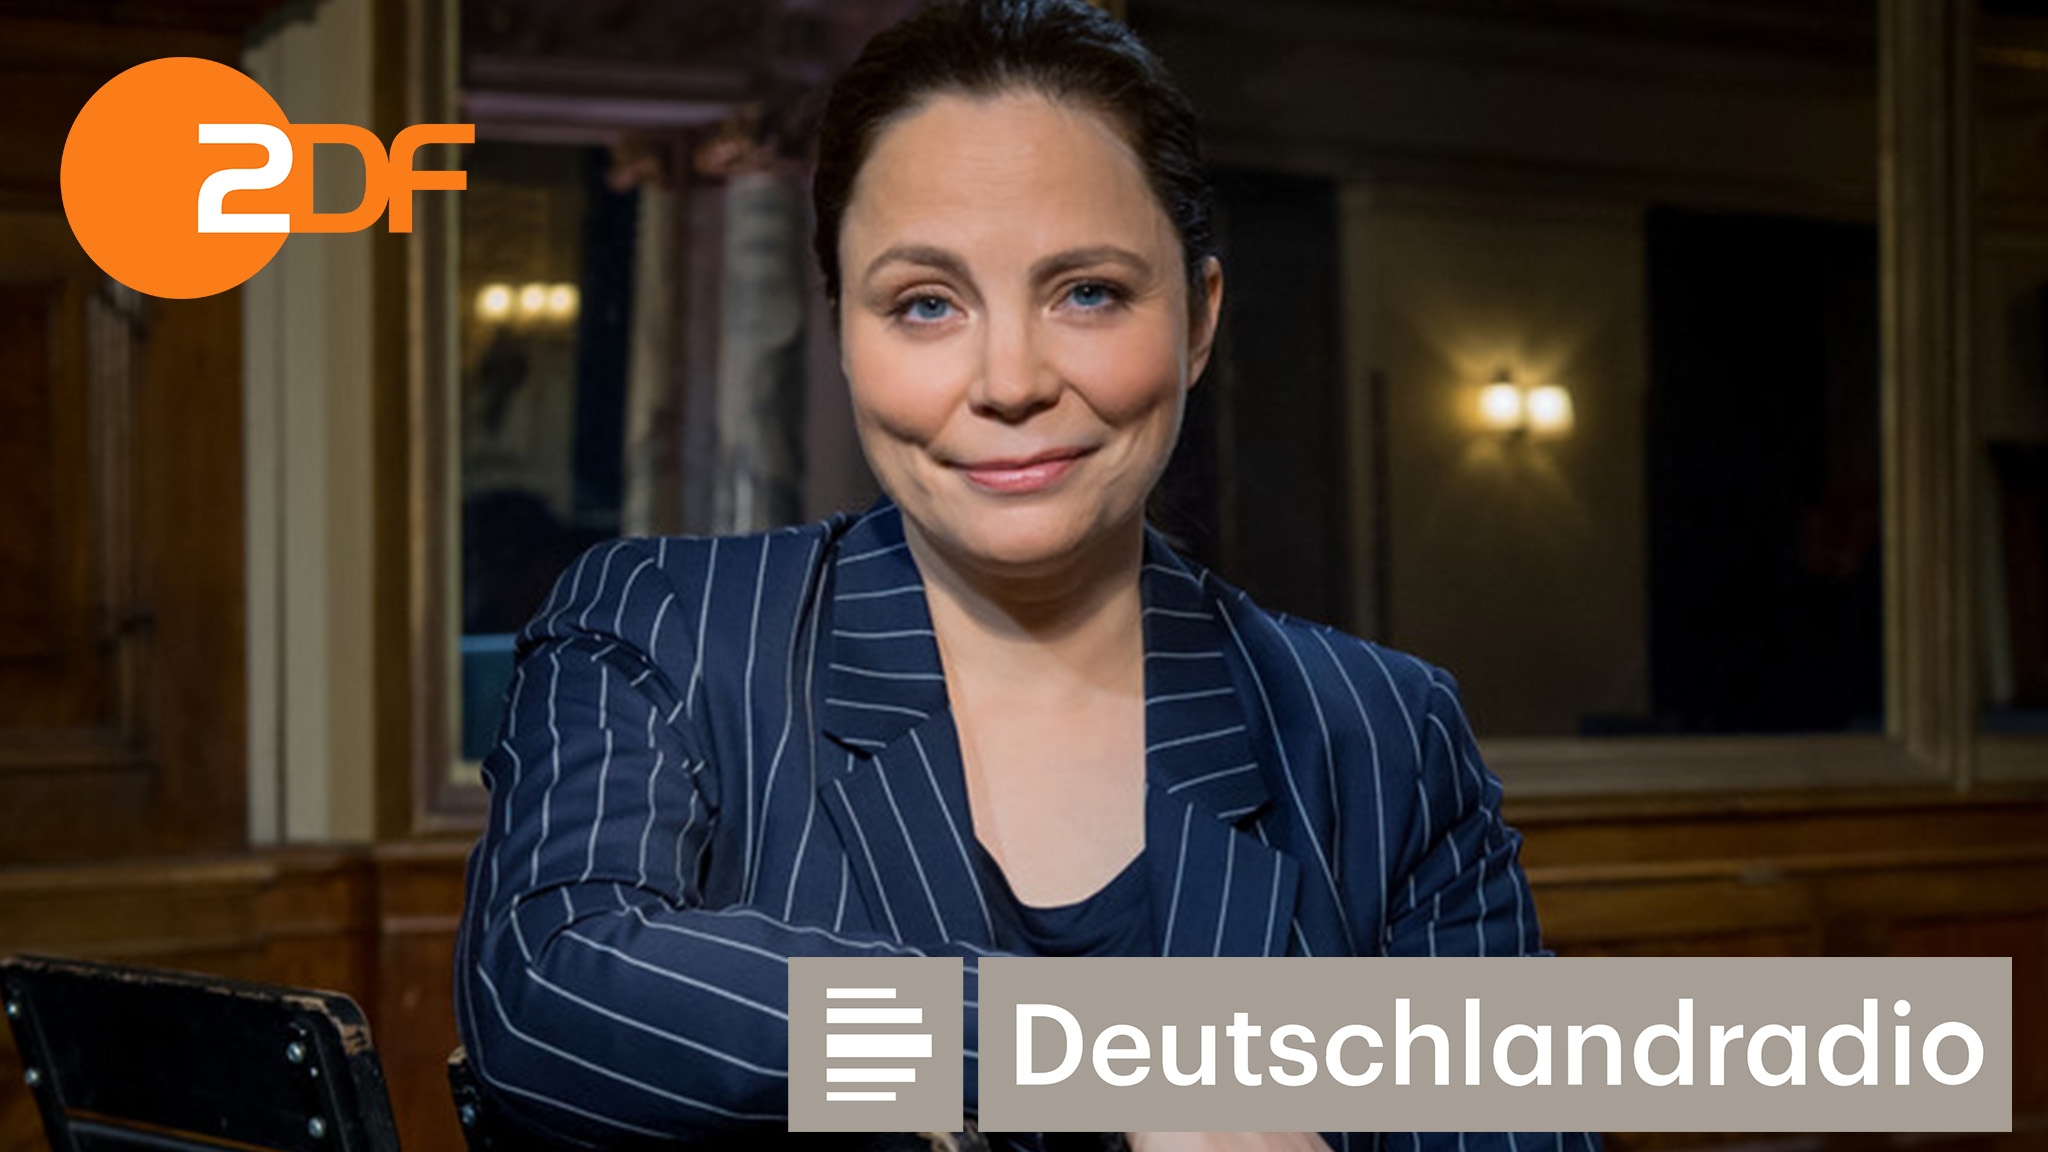 ZDF und Deutschlandradio kooperieren. "Das Literarische Quartett" erscheint zukünftig als Podcast auf beiden Sendern. Weitere Formate sollen folgen. Foto: ZDF/Svea Pietschmann 